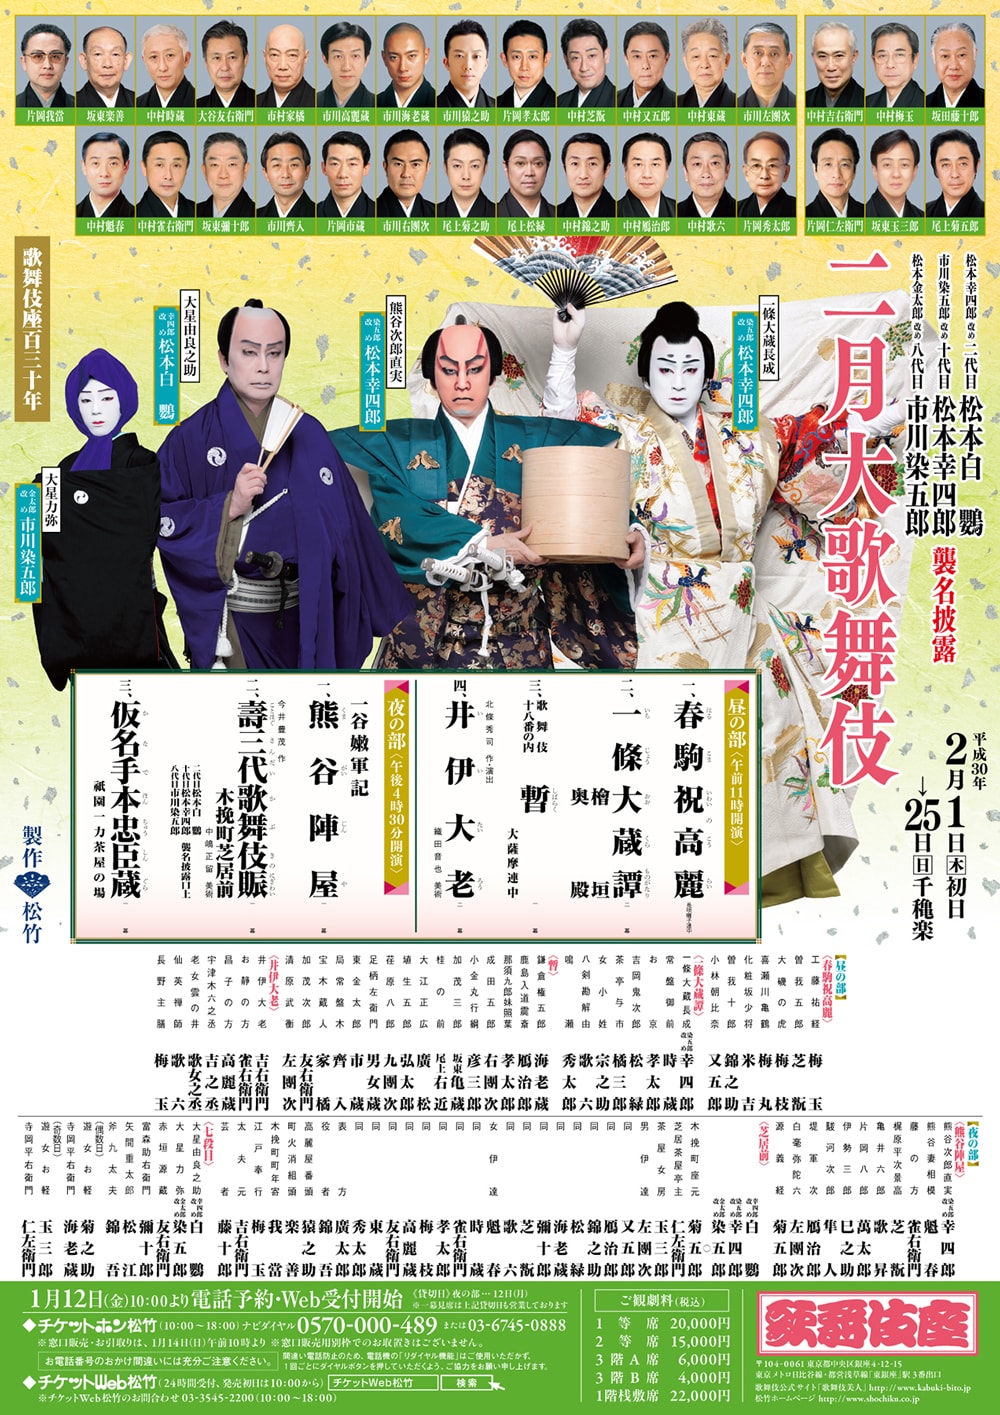 February at the kabukiza